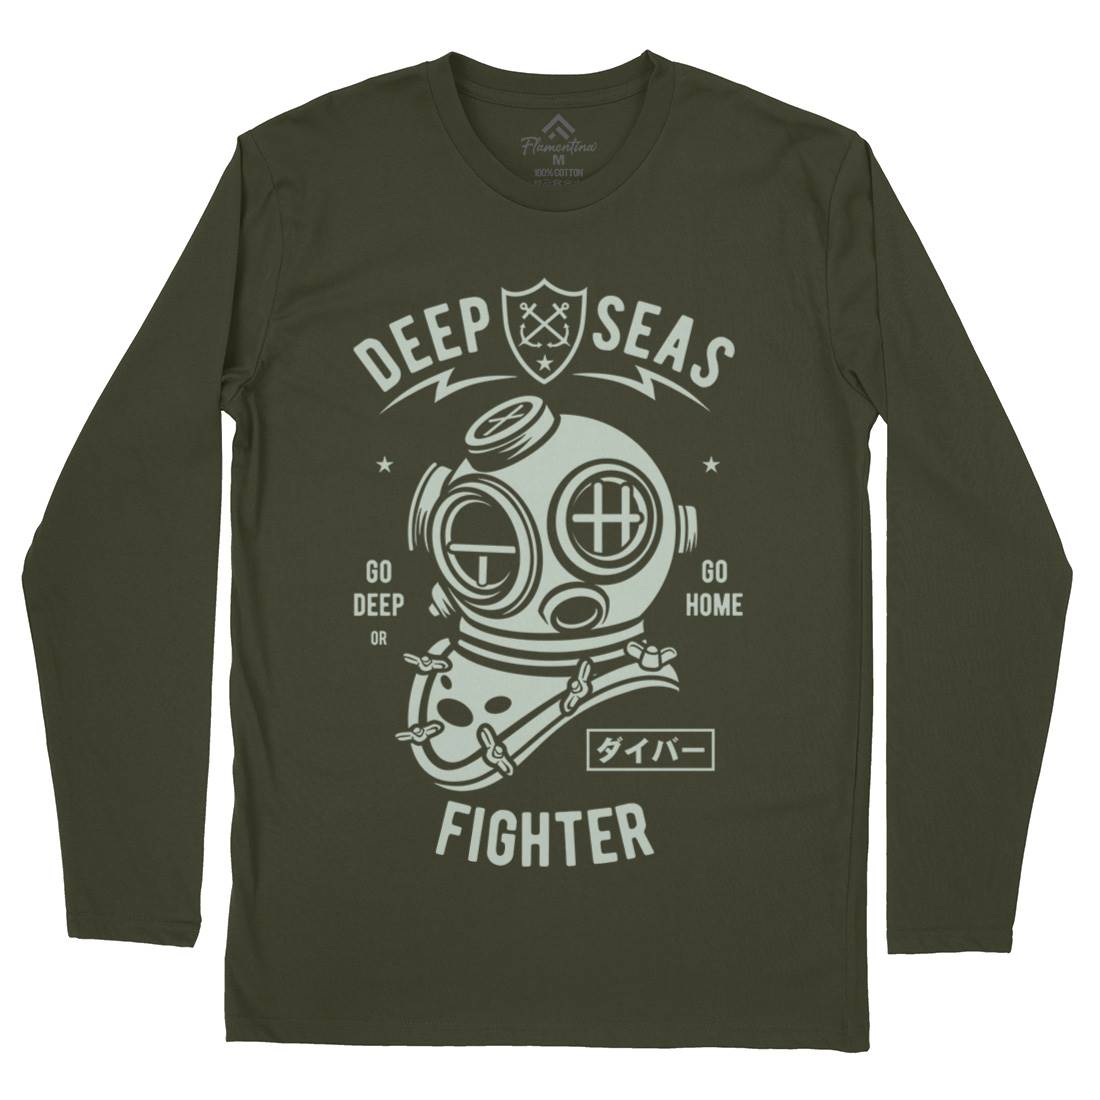 Deep Seas Fighter Mens Long Sleeve T-Shirt Navy A223